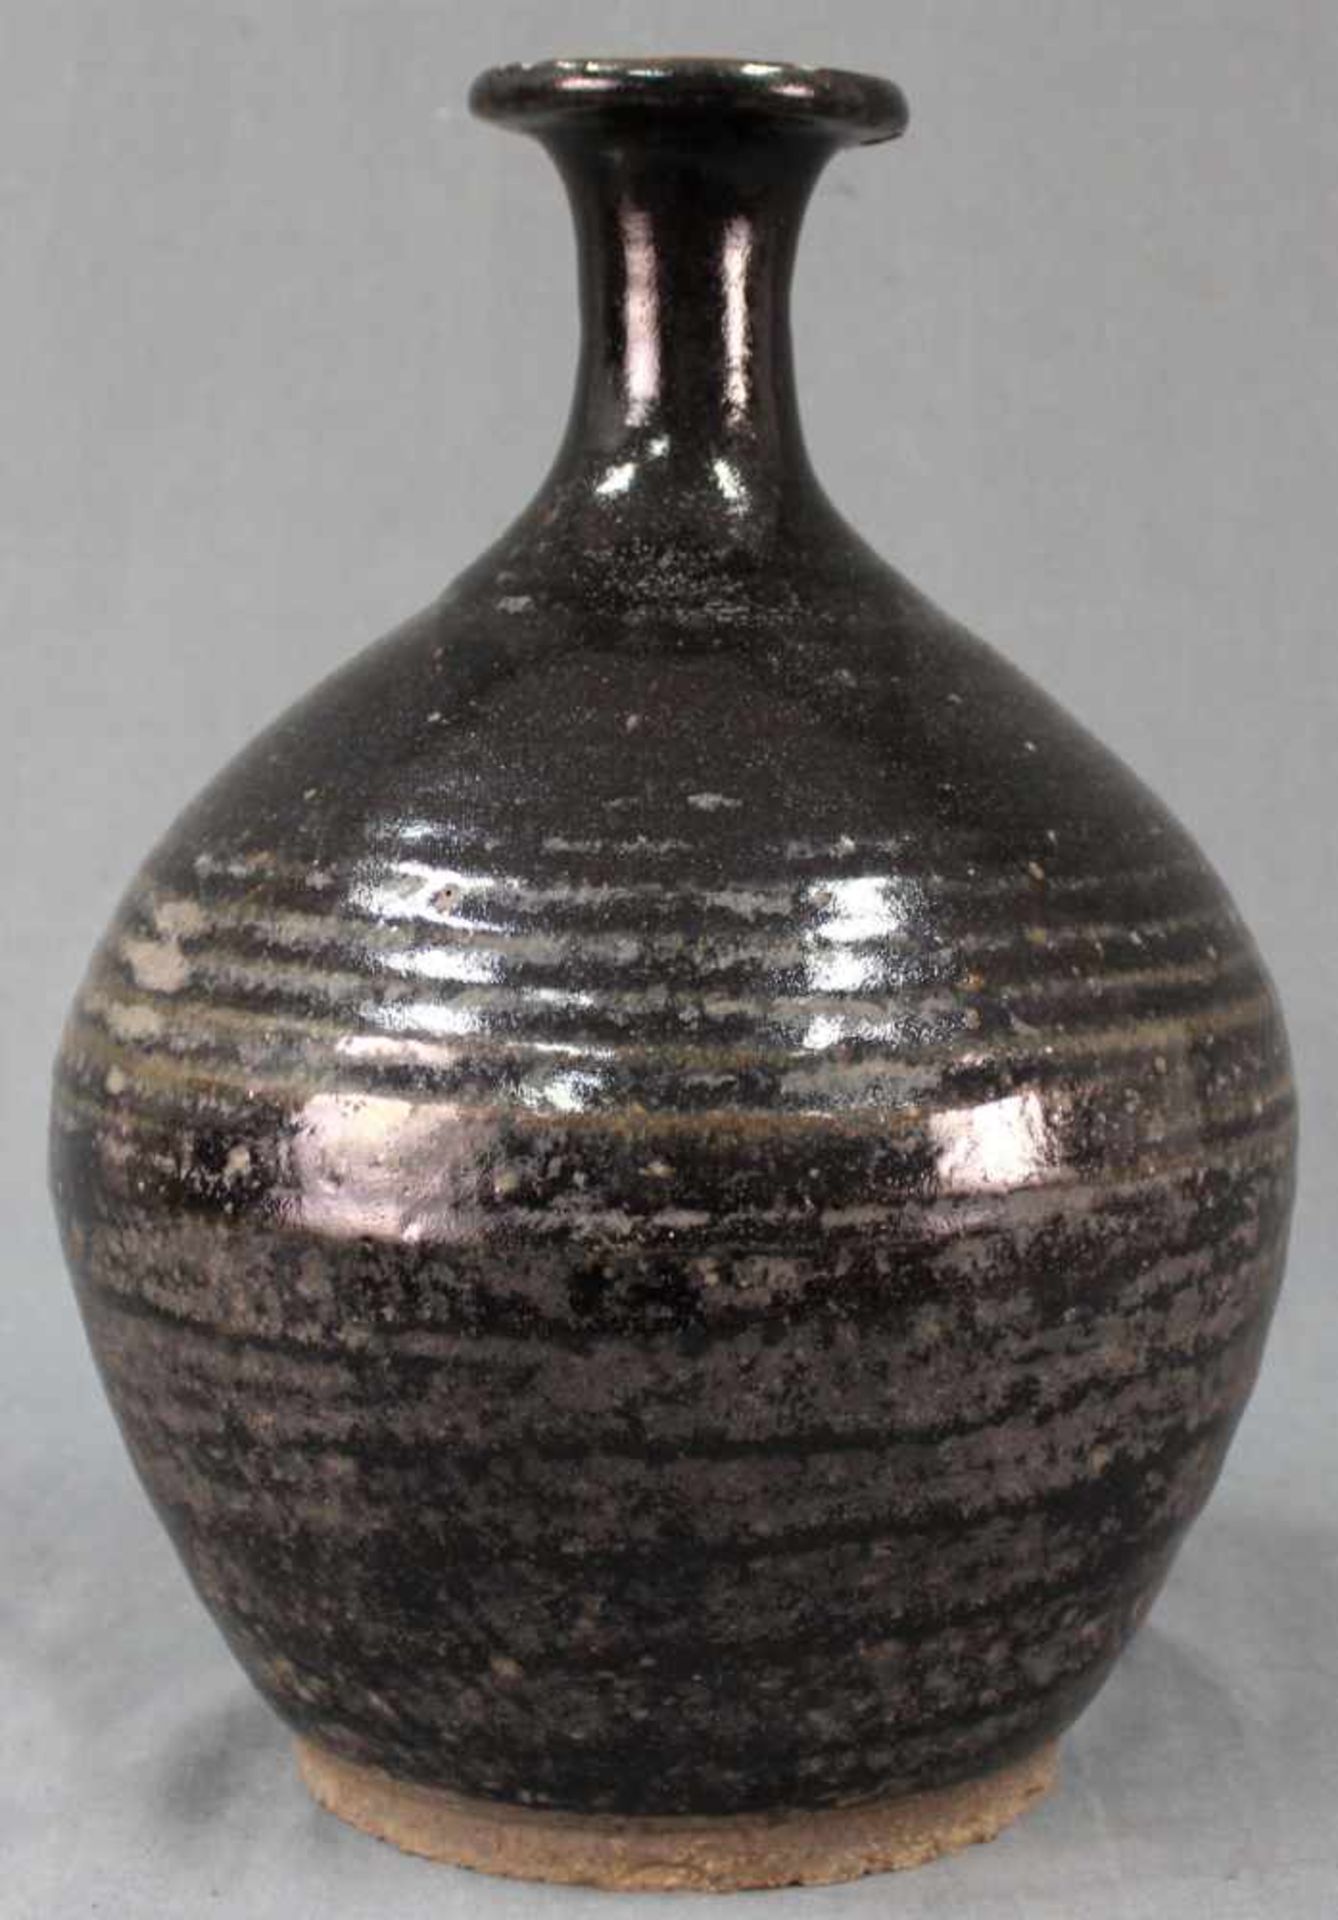 Bauchige Vase. Vorratsgefäß. Steingut. Schwarze Glasur. Wohl Zentralasien, antik.34 cm hoch.Vase. - Image 3 of 7